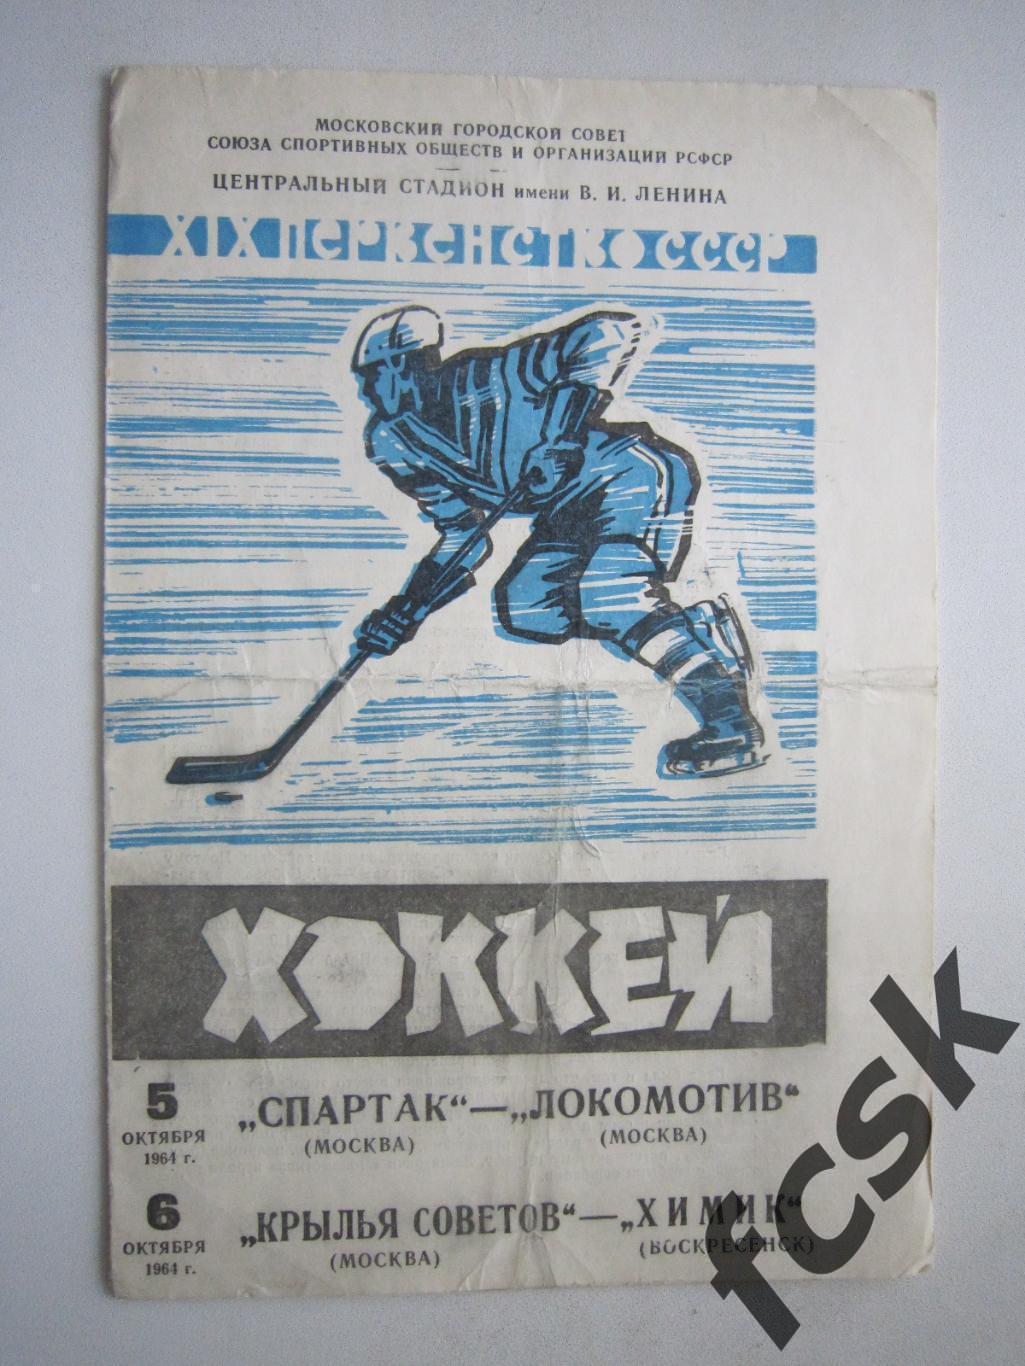 Спартак Москва - Локомотив Крылья Советов - Химик Воскресенск 05-06.10.1964 (ф)